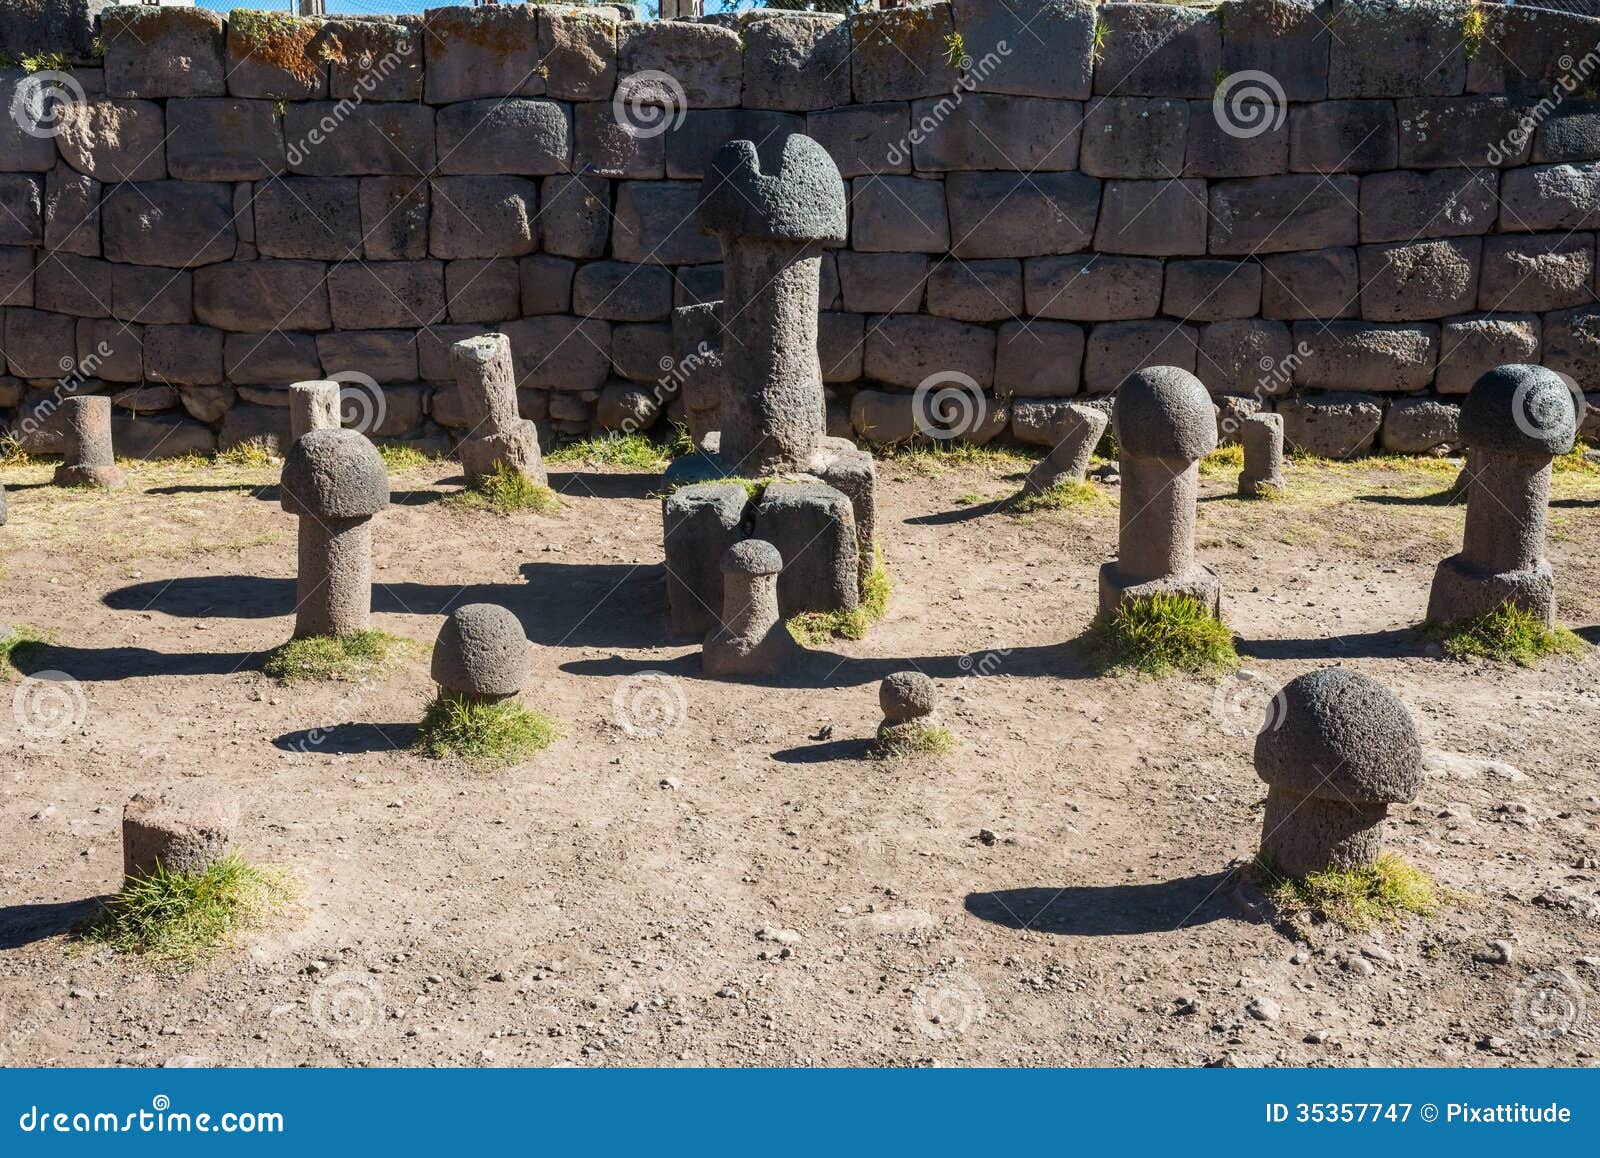 fertility temple peruvian andes at puno peru